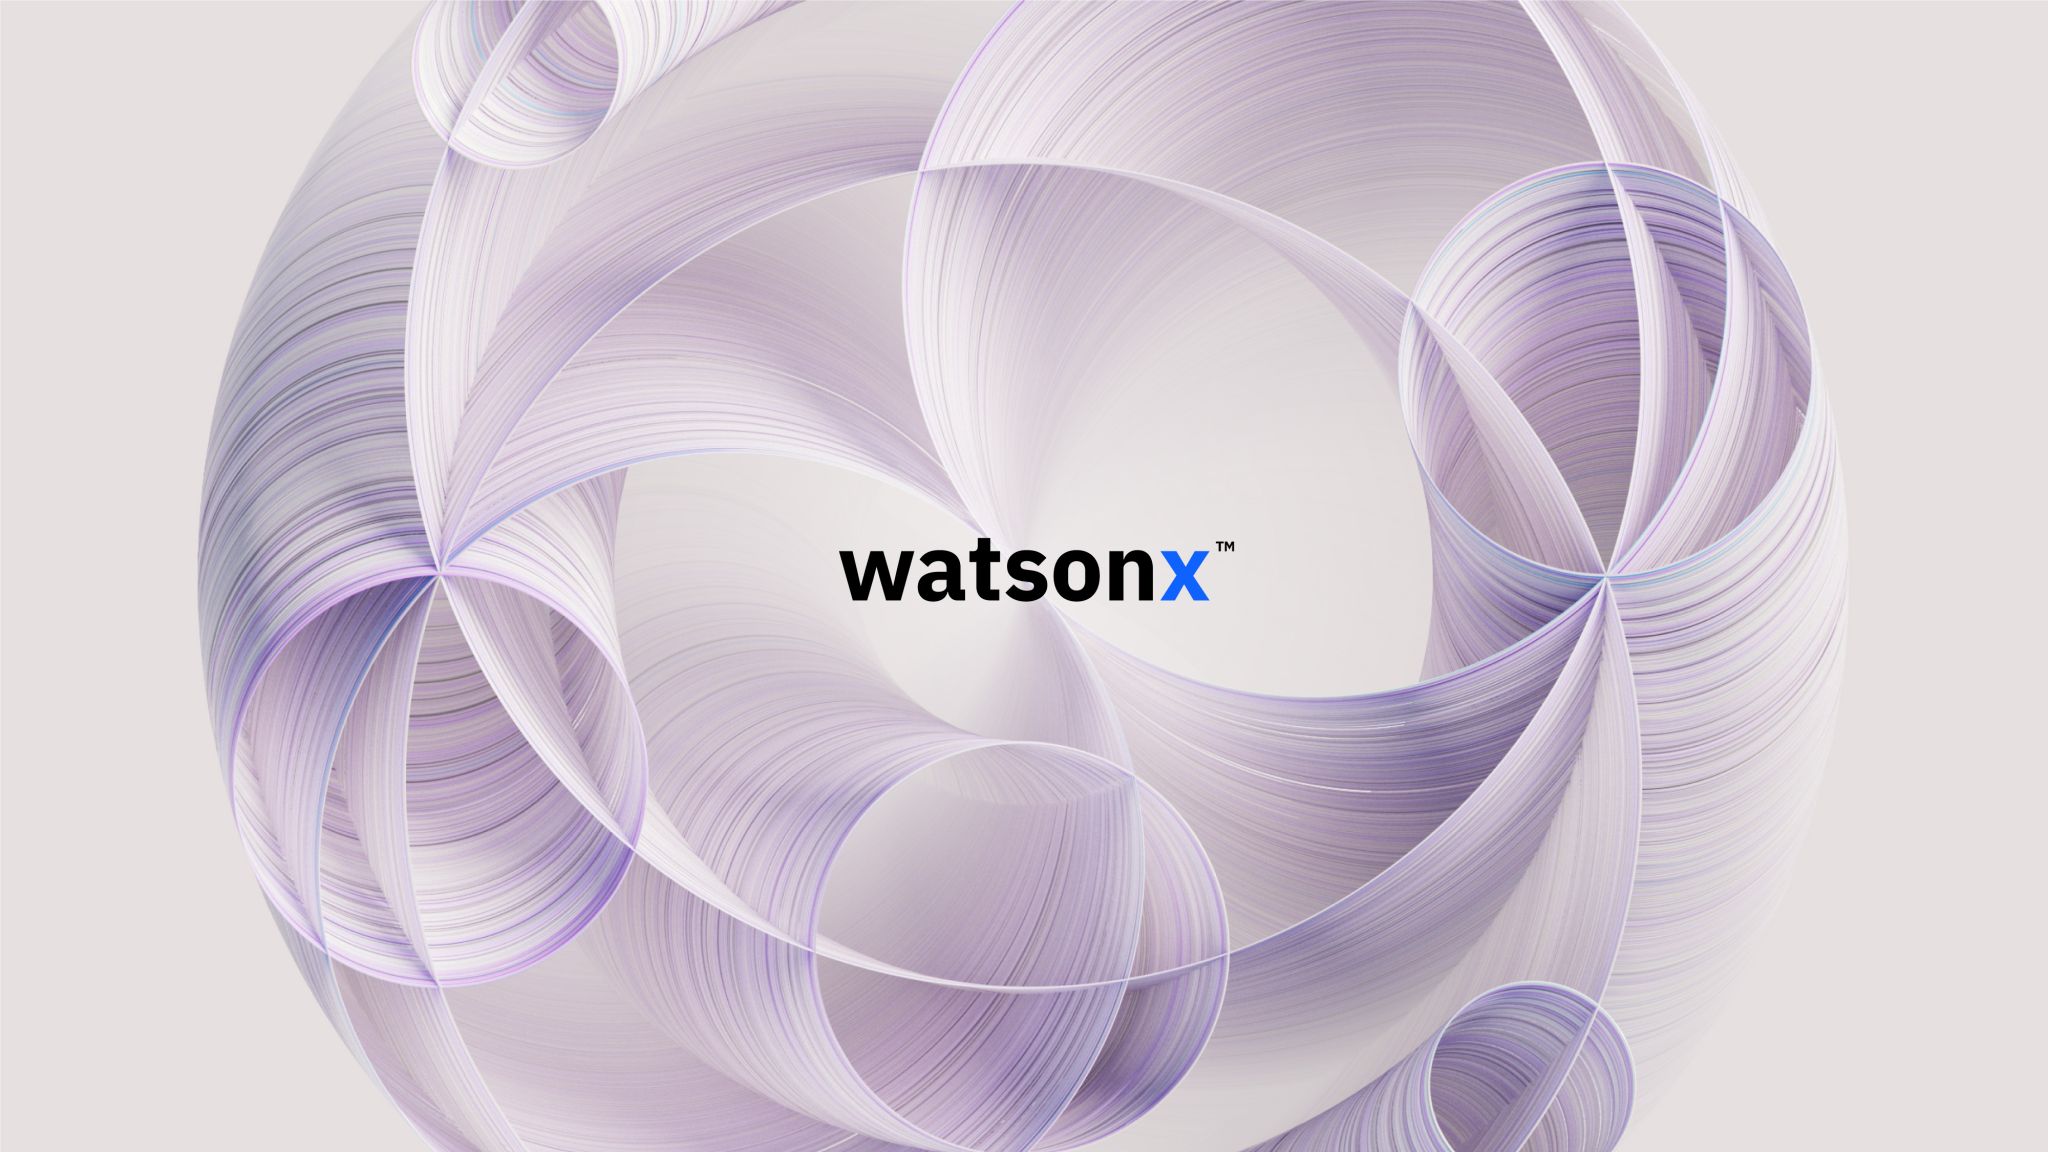 IBM anunció la plataforma IBM watsonx